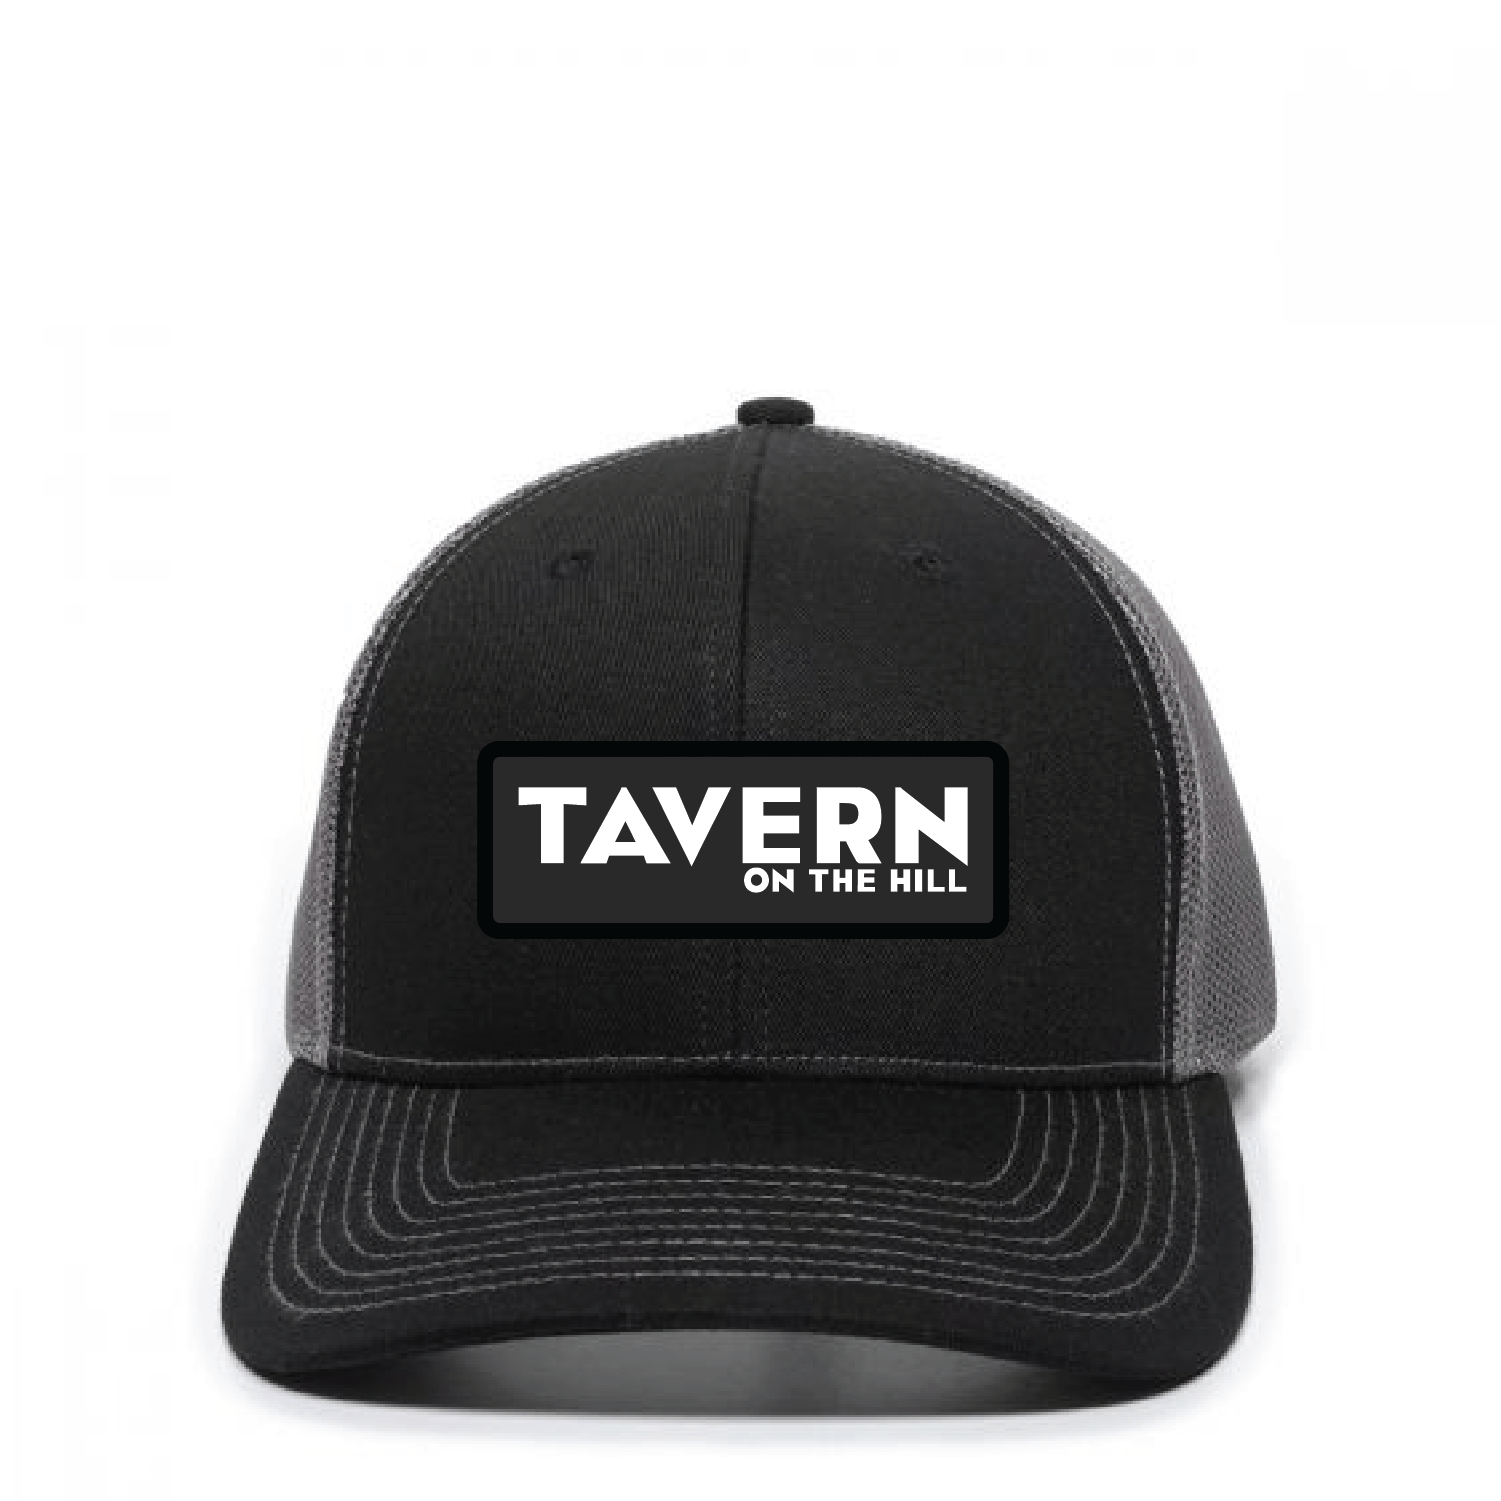 Wholesale Tavern Trucker Hat - DSP On Demand